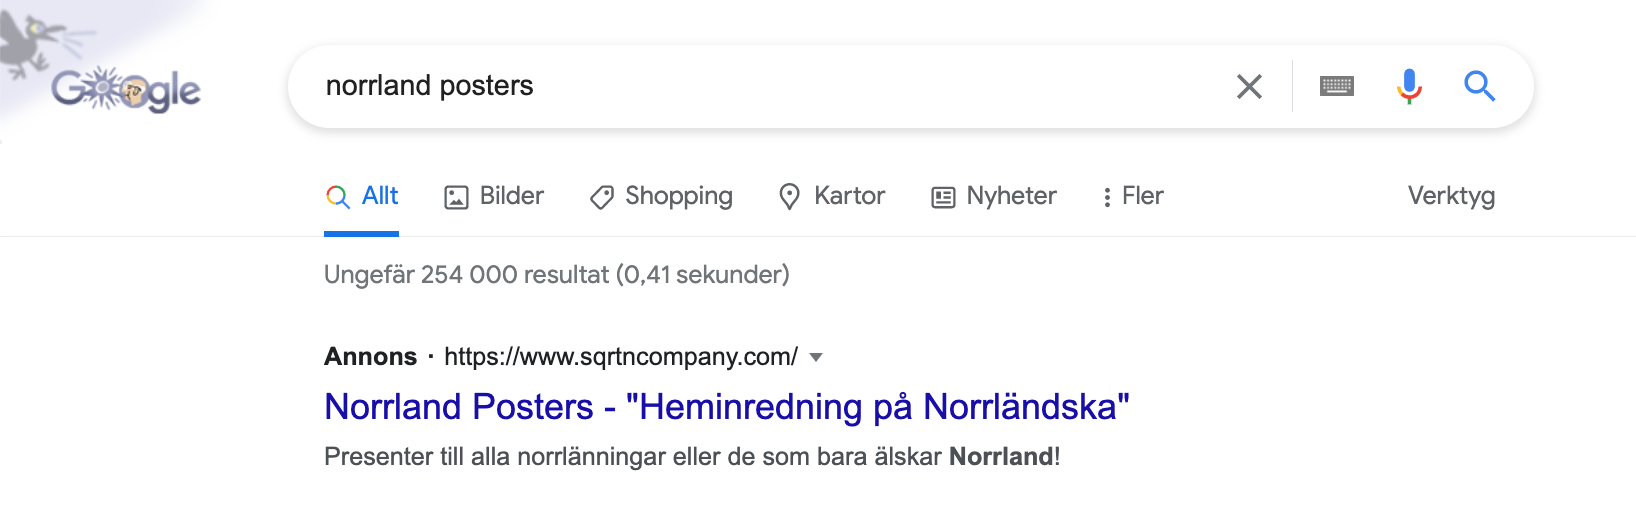 Google sökning för sökordet "norrland posters"